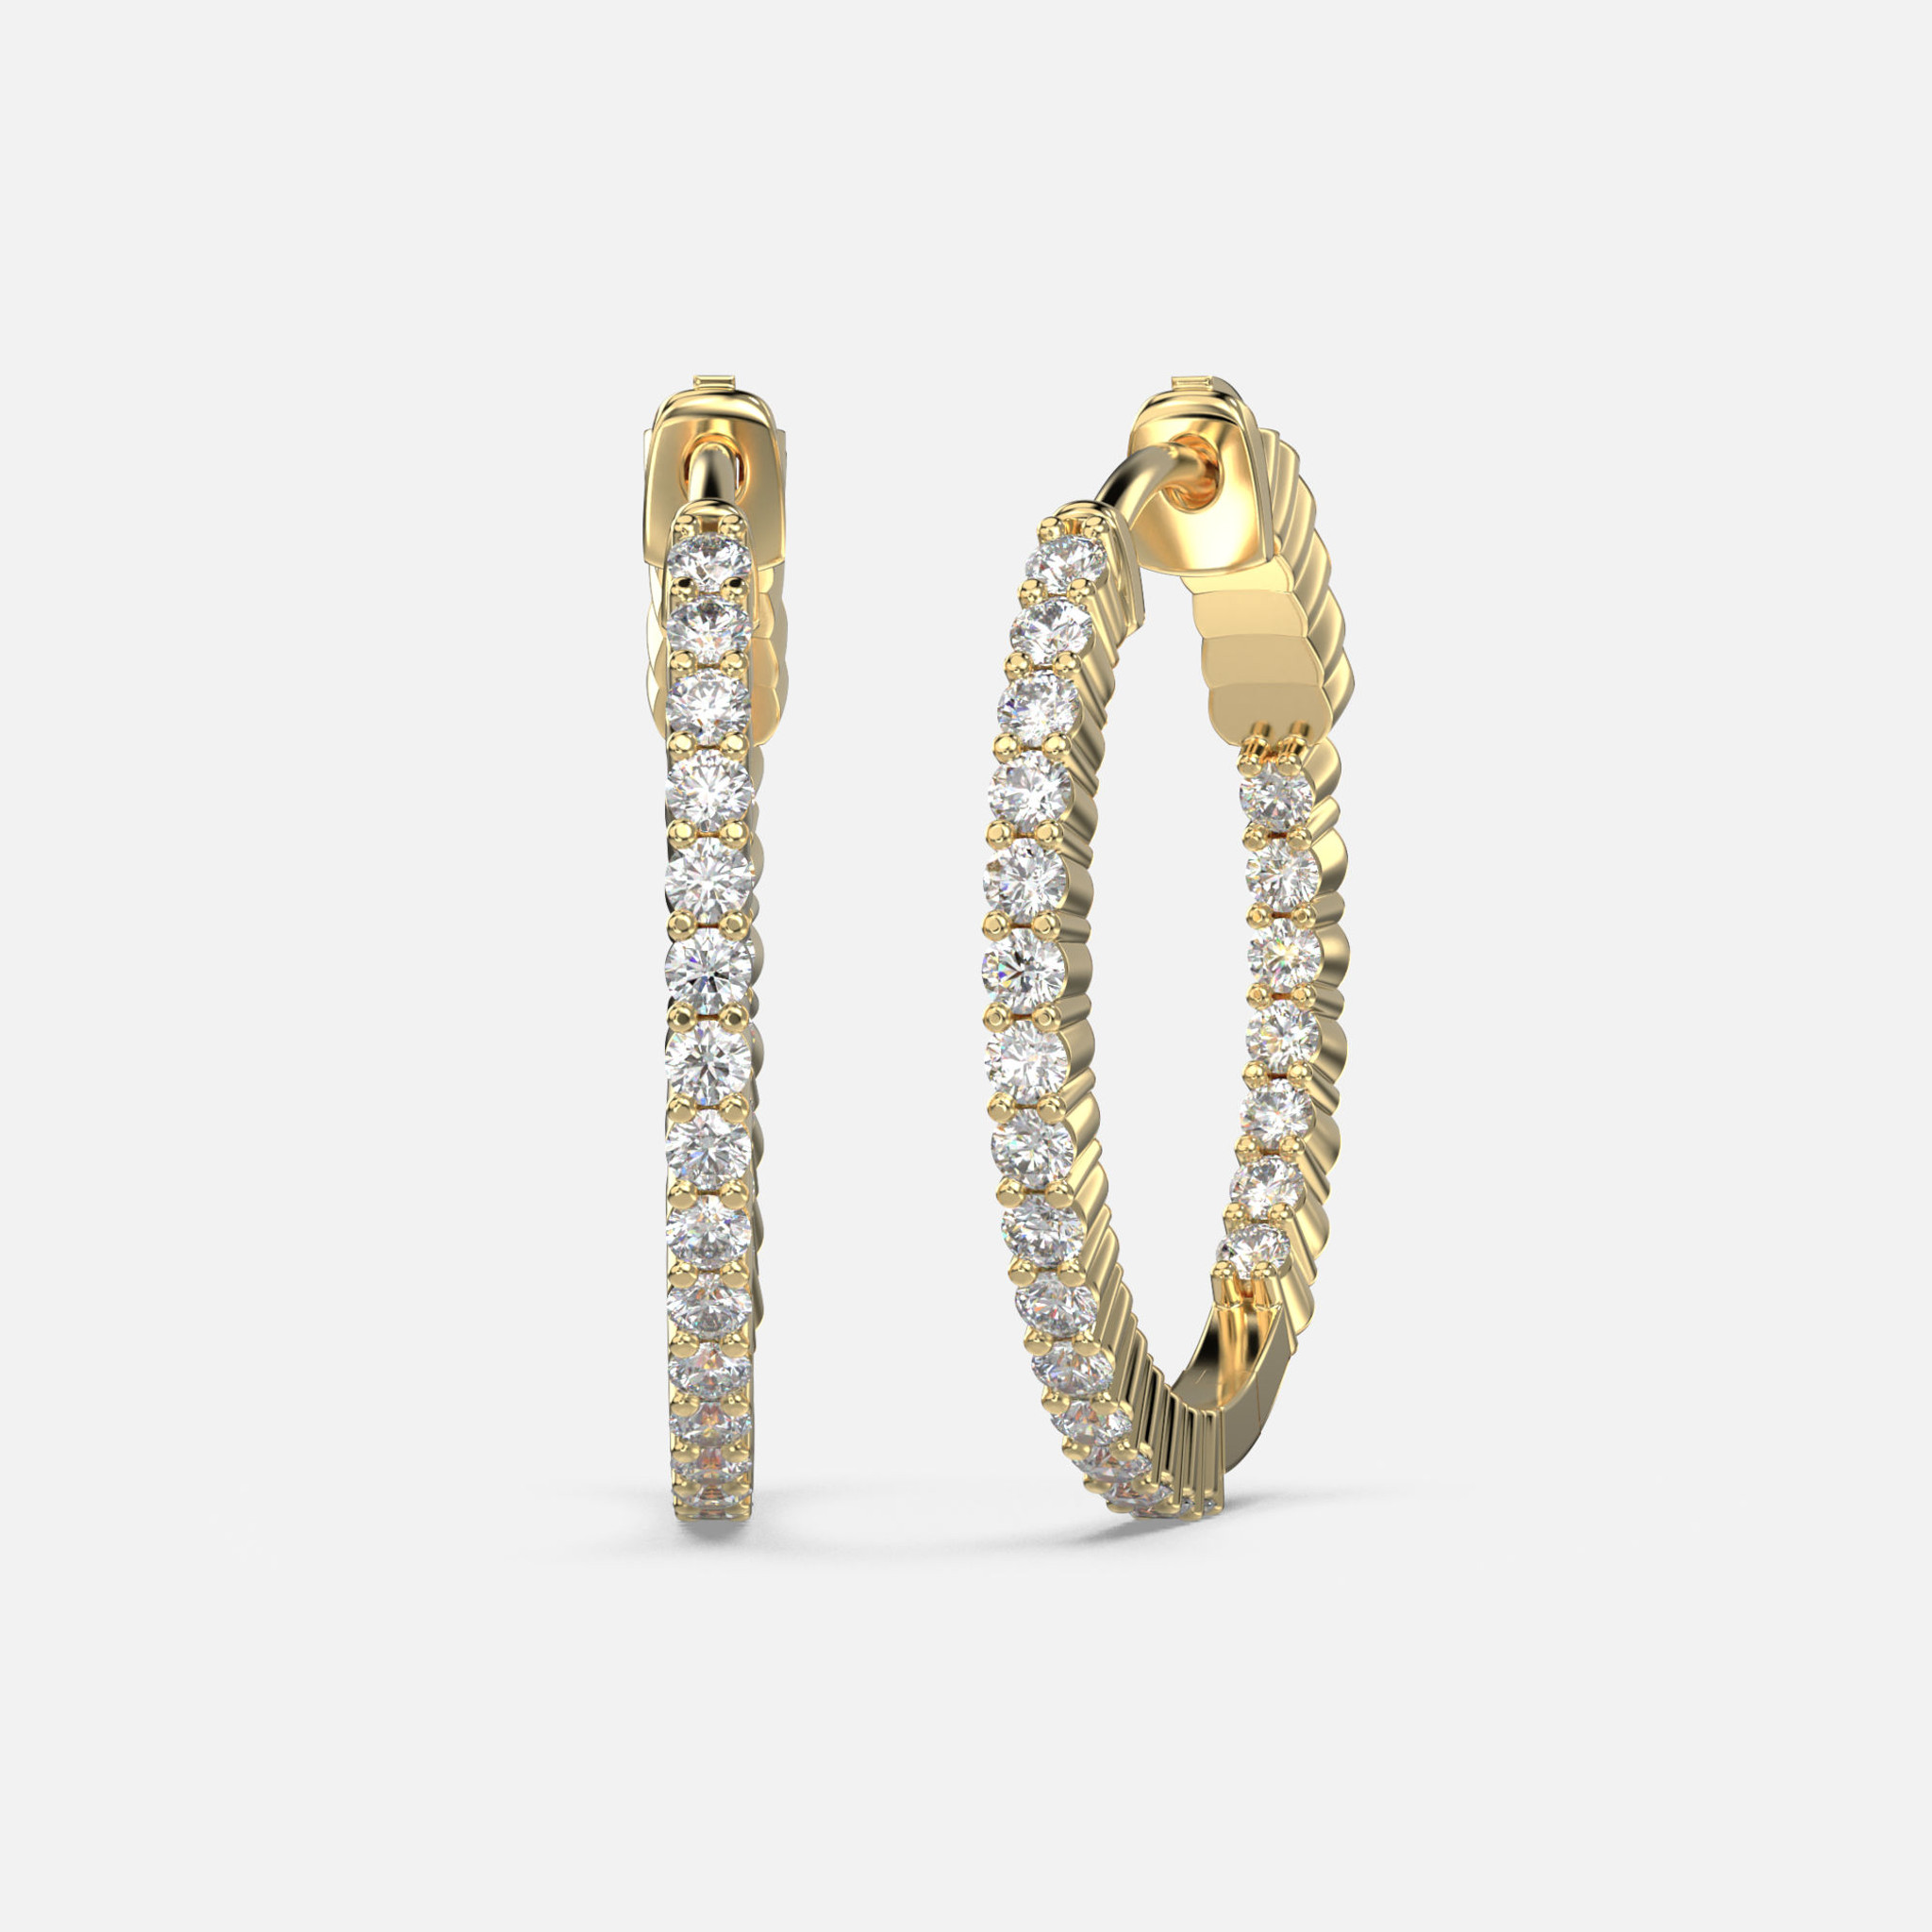 Mini pendientes de aro con diamante interior y exterior: Elegantes y brillantes de oro de 10k, asegurados con un escultural cierre de bisagra.